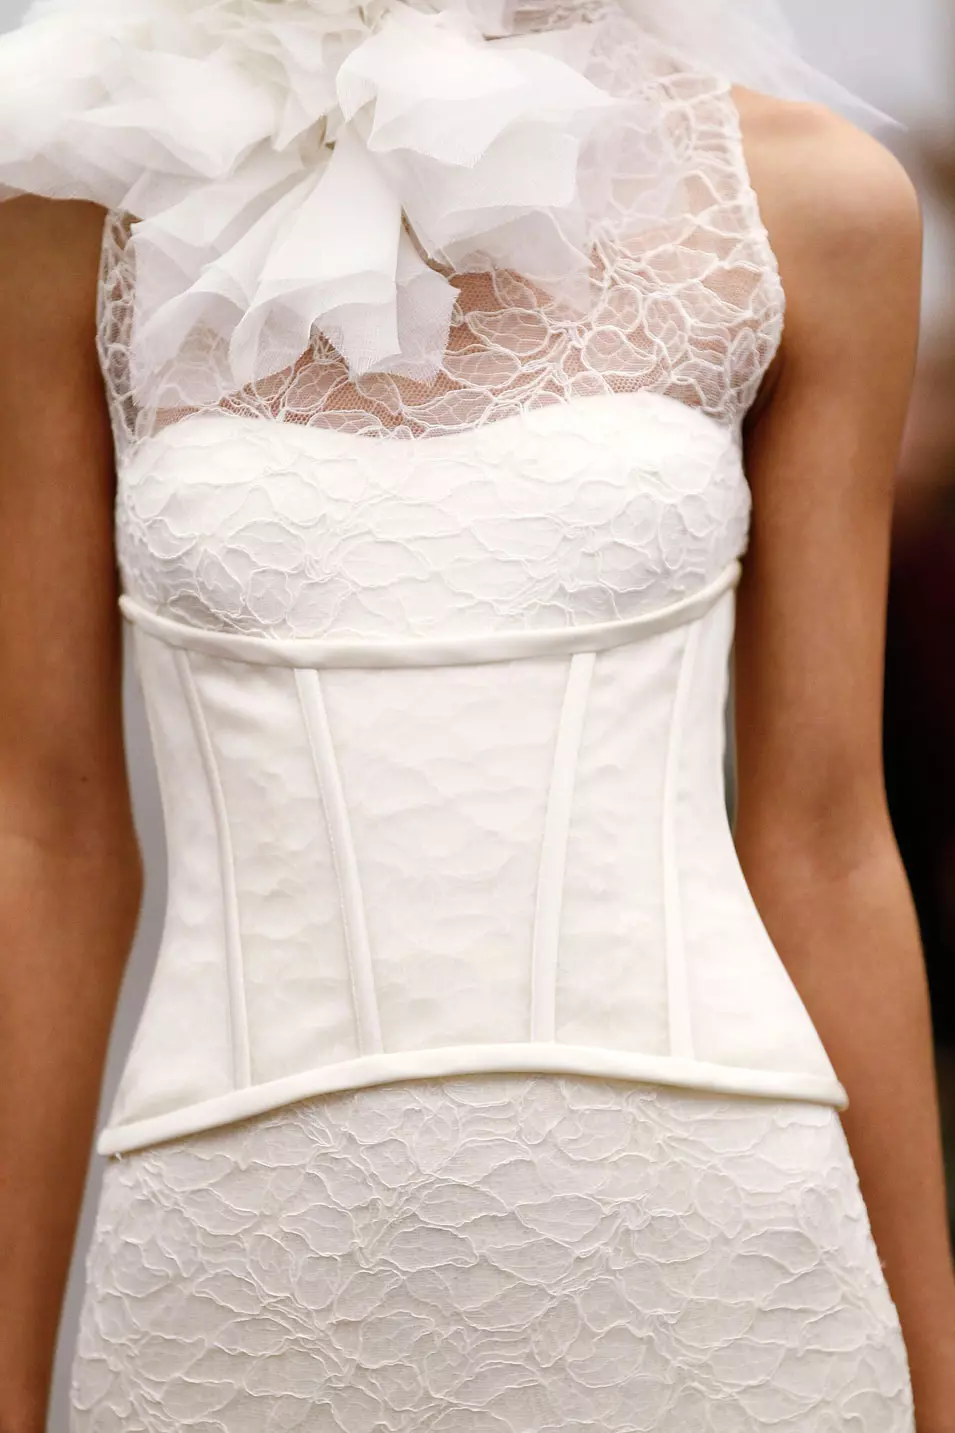 פרט משמלת כלה מקולקציית סתיו 2013 בעיצוב וירה וונג אשר הוצגה בשבוע האופנה לכלות, ניו יורק, אוקטובר 2012